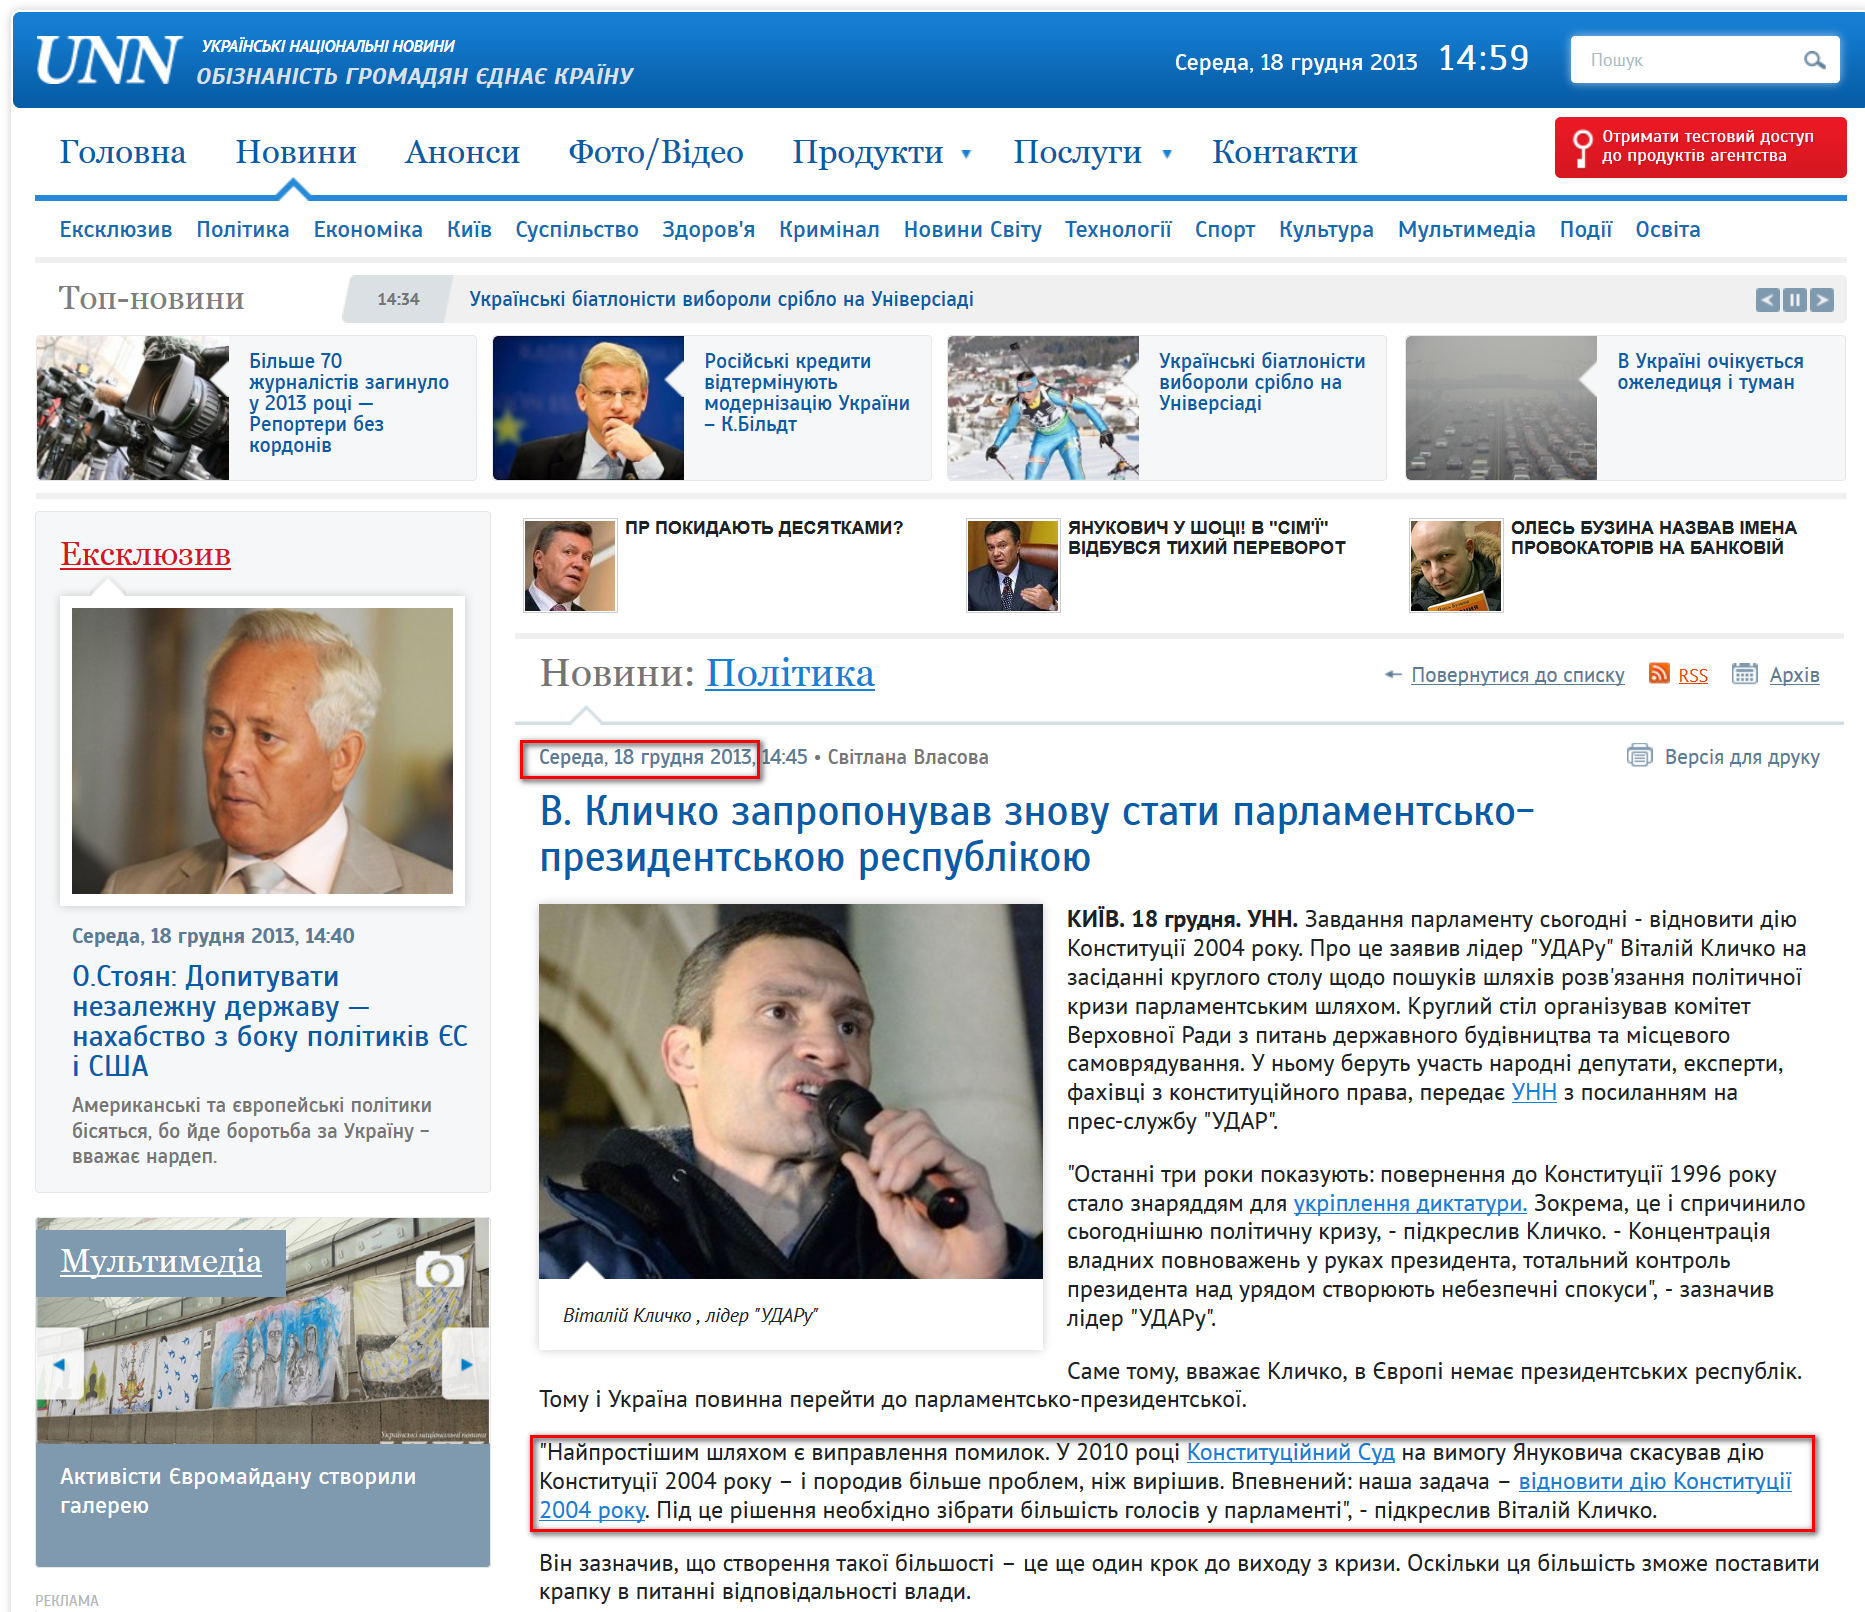 http://www.unn.com.ua/uk/news/1285740-v-klichko-ukrayina-povinna-pereyti-do-parlamentsko-prezidentskoyi-modeli-vladi